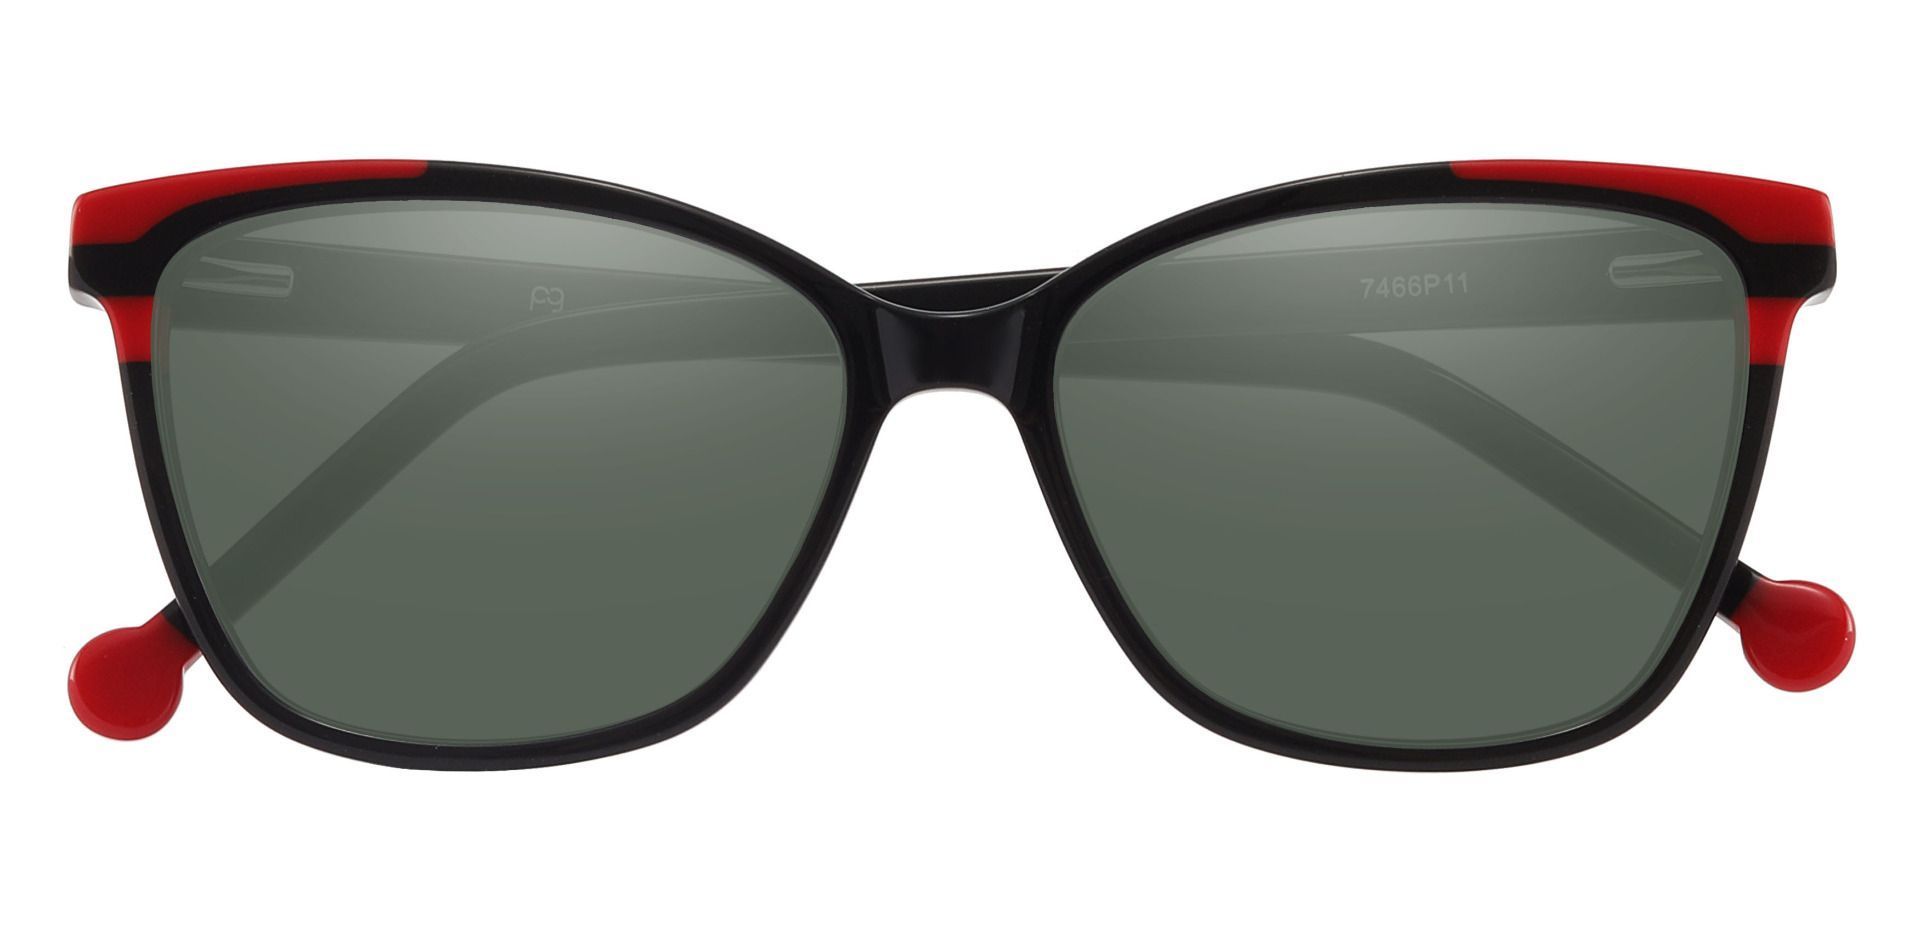 Shania Cat Eye Reading Sunglasses - Black Frame With Green Lenses